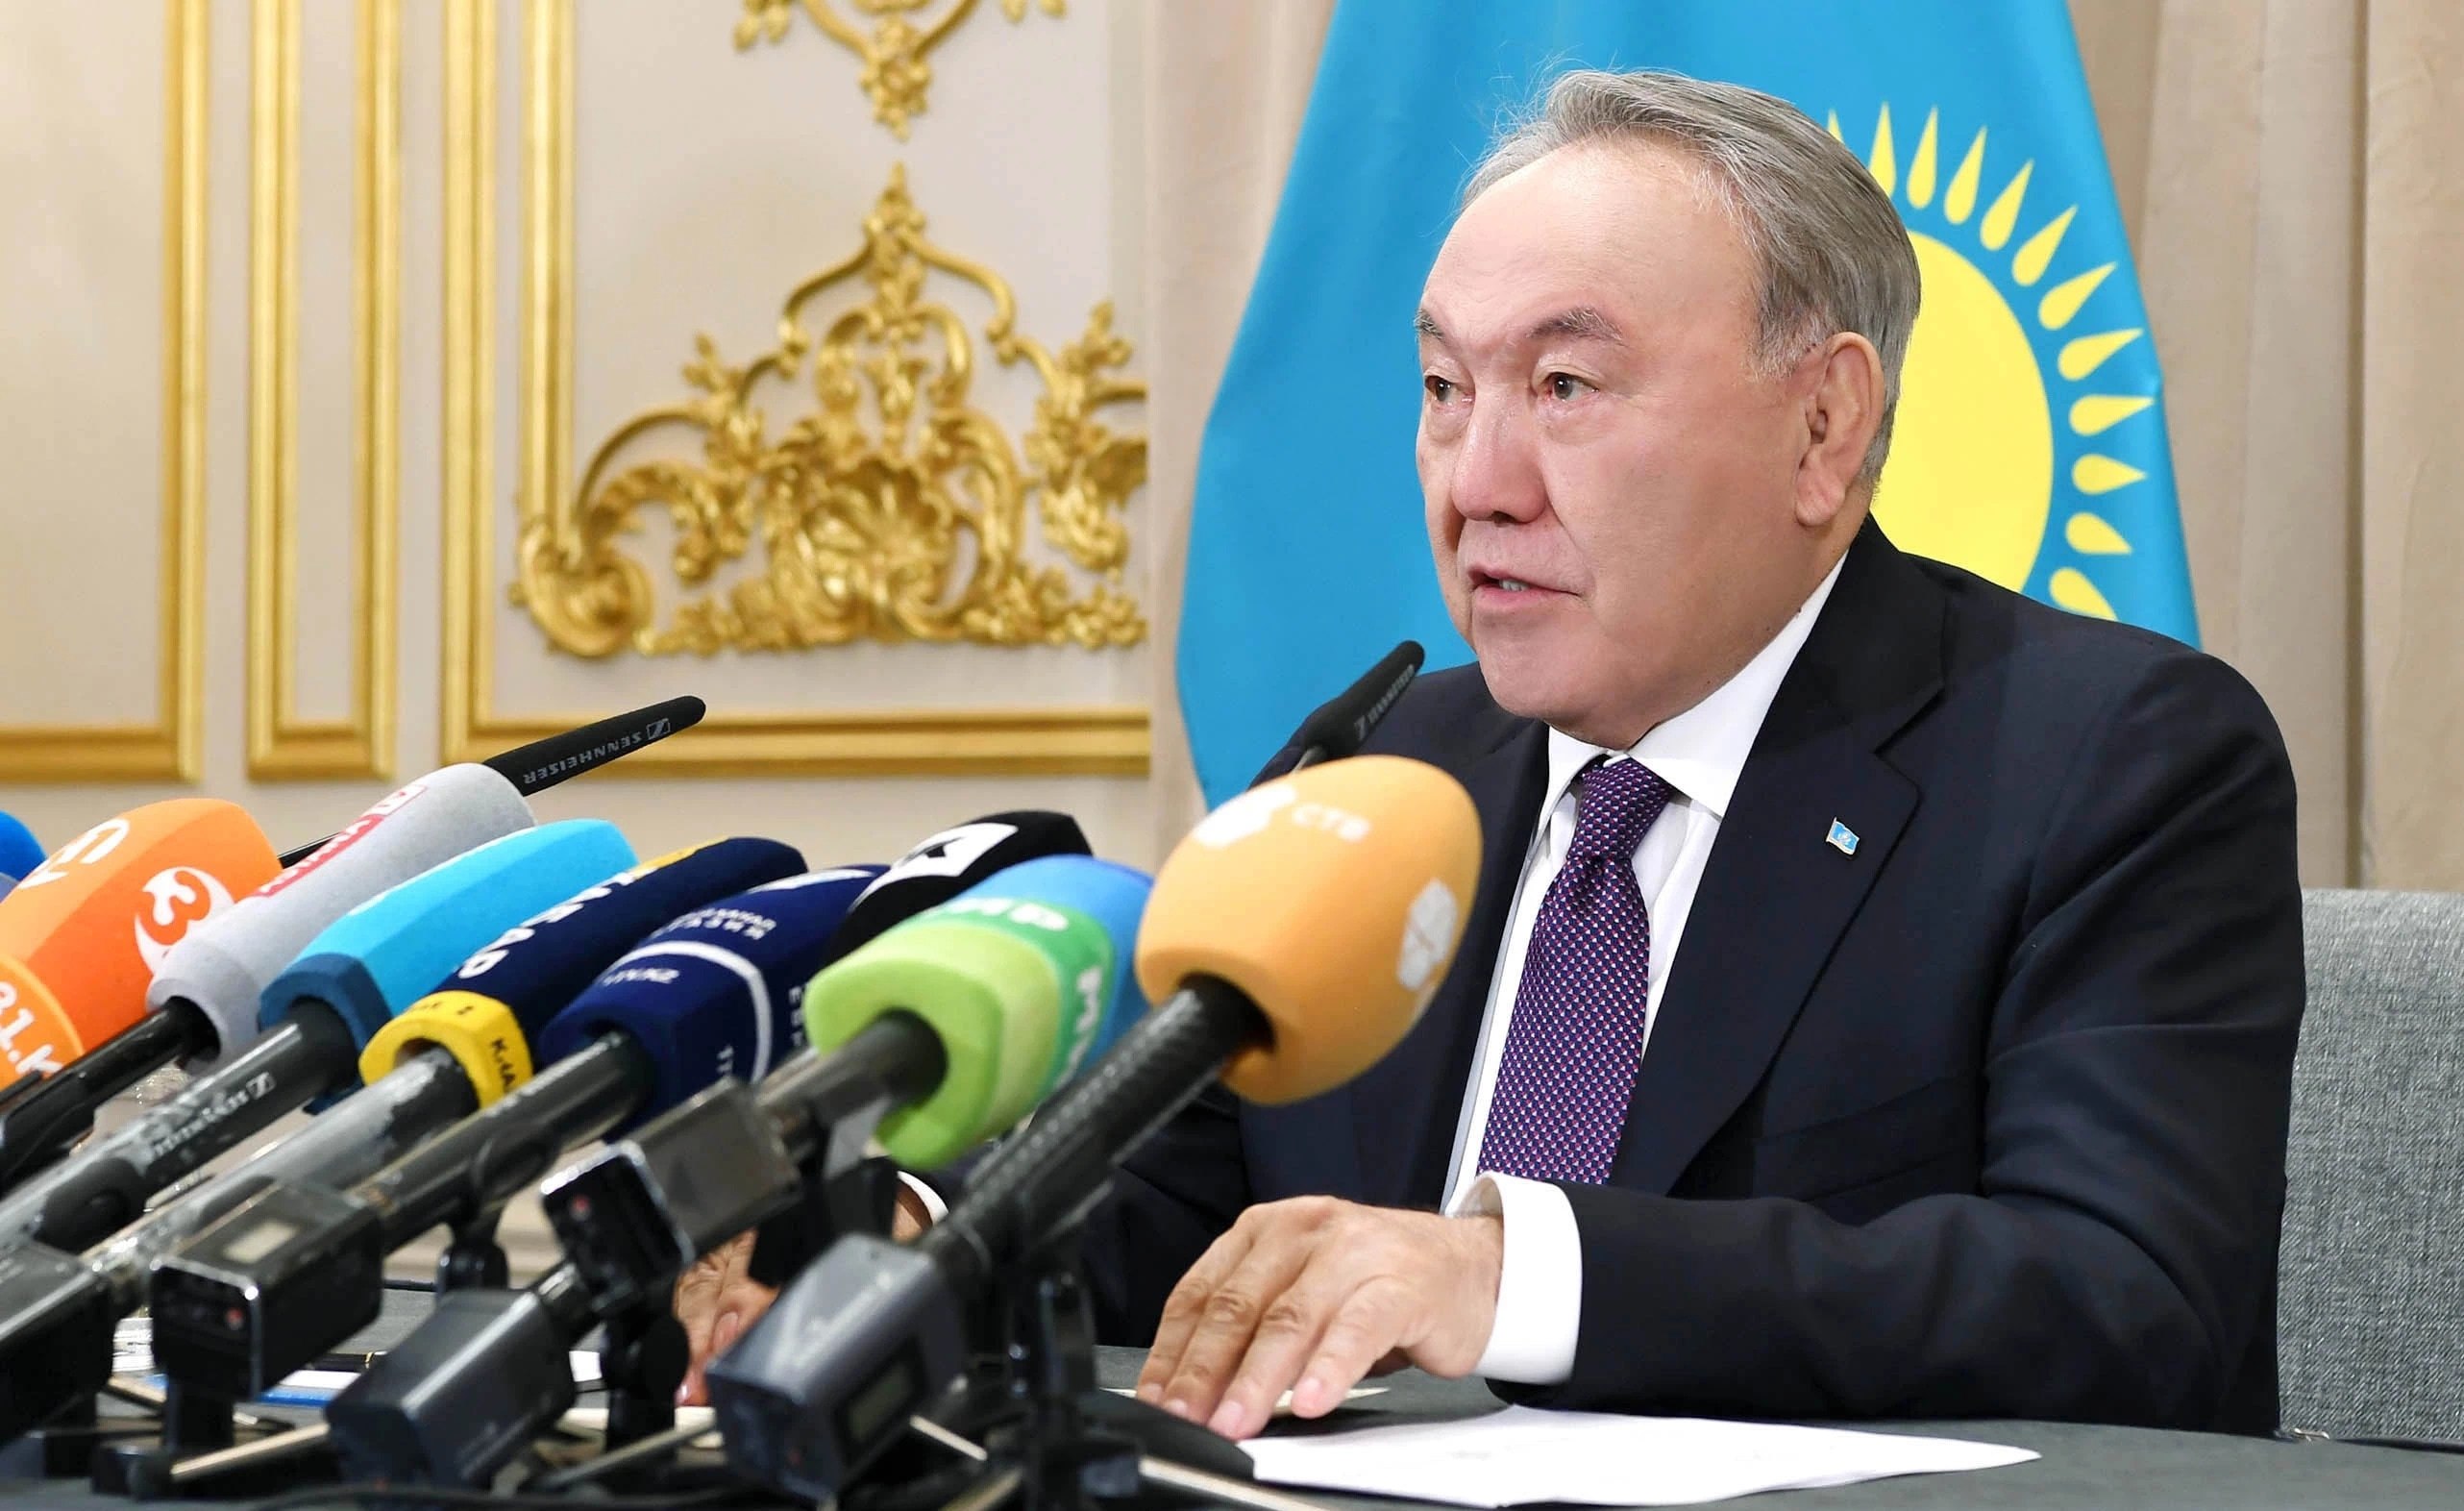 Что поручил сделать Нурсултан Назарбаев